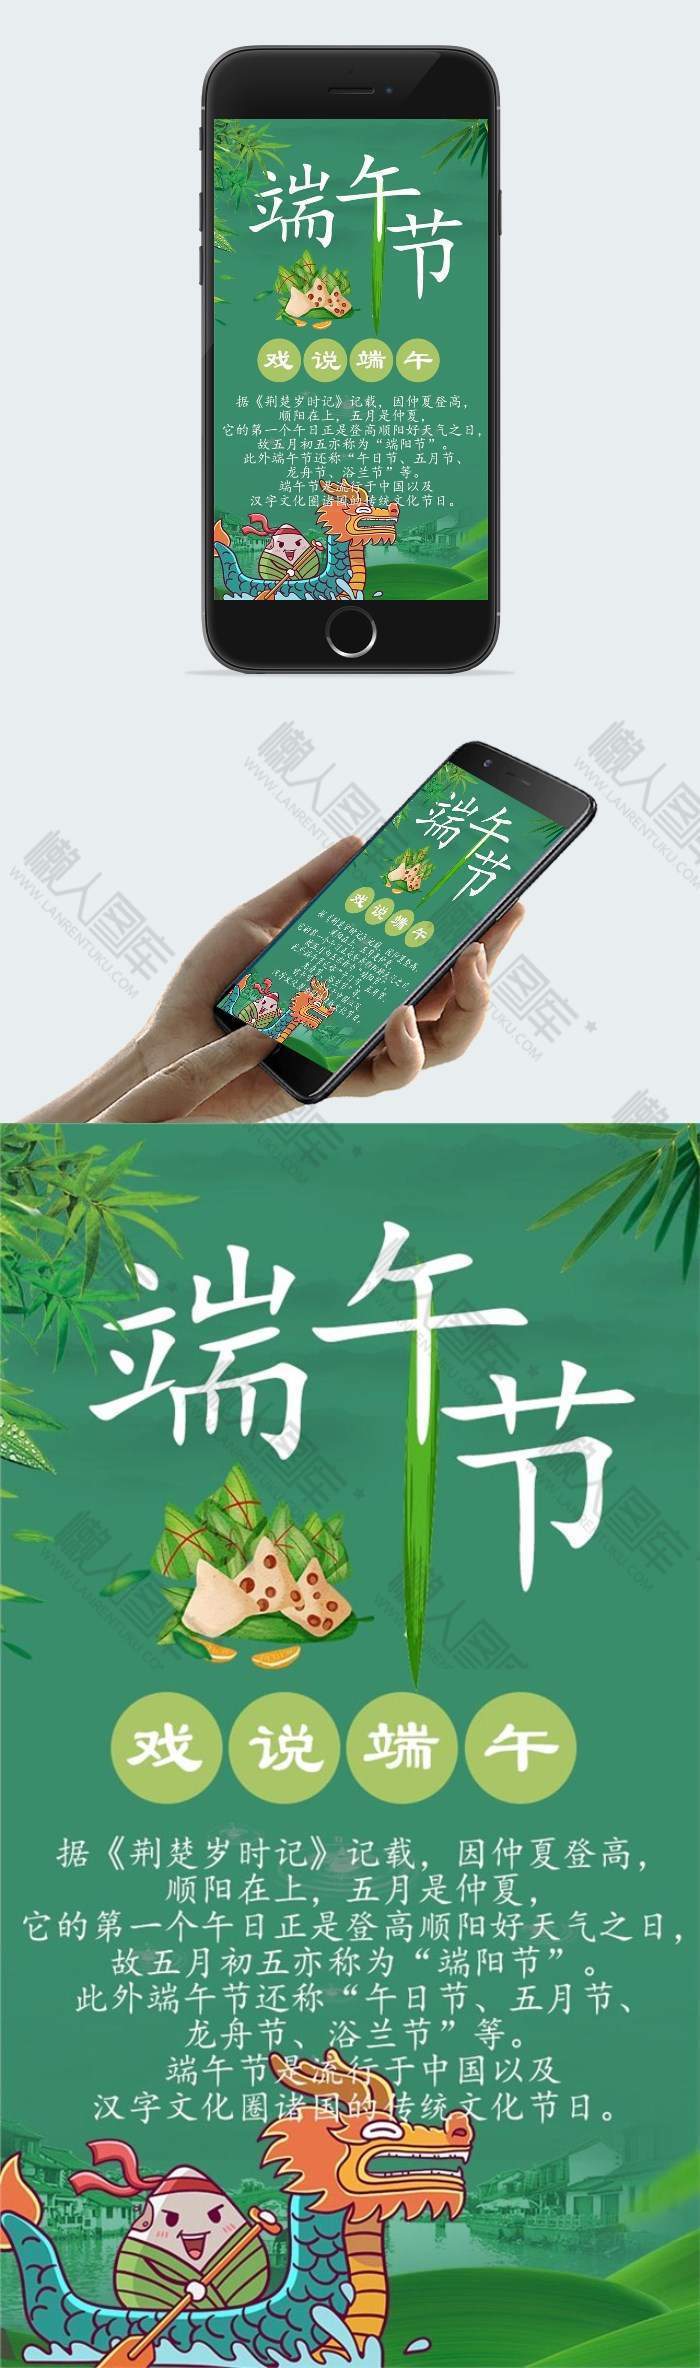 绿色端午节手机海报